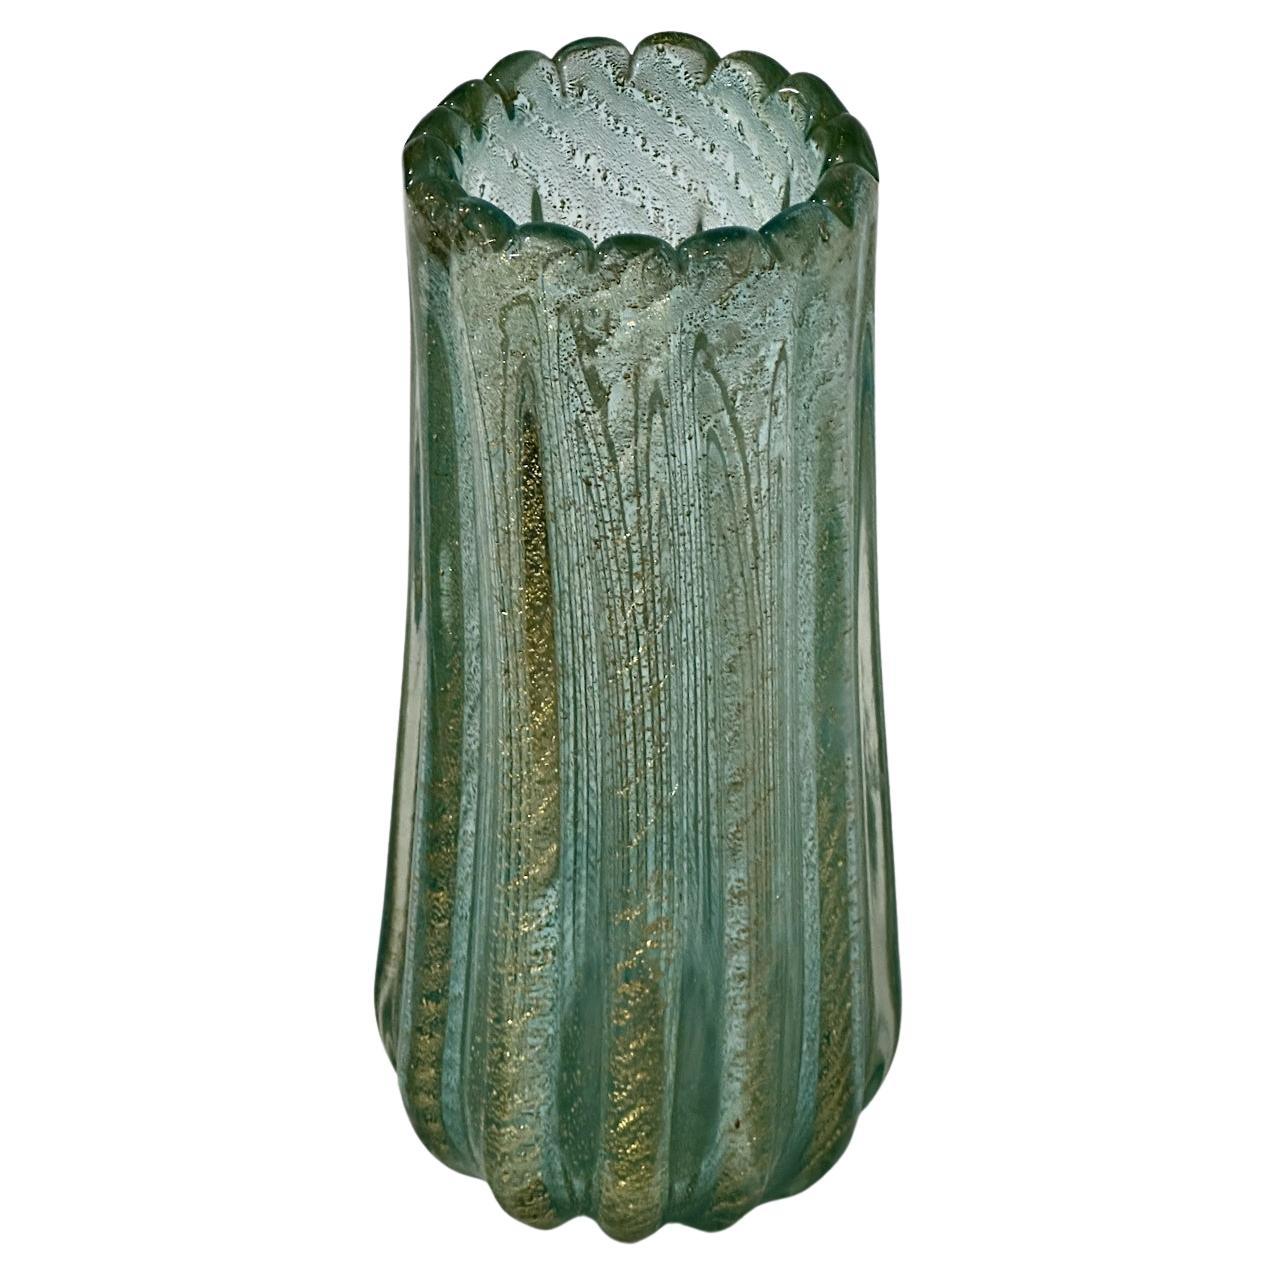 Vase en verre de Murano Cordonato d'Or vert et or d'Ercolier & Barovier&Toso, vers 1950. Cette pièce est composée d'une forme artisanale à nervures verticales, d'un bord à volants et de rubans verticaux en or 24 carats fusionnés sur du verre de